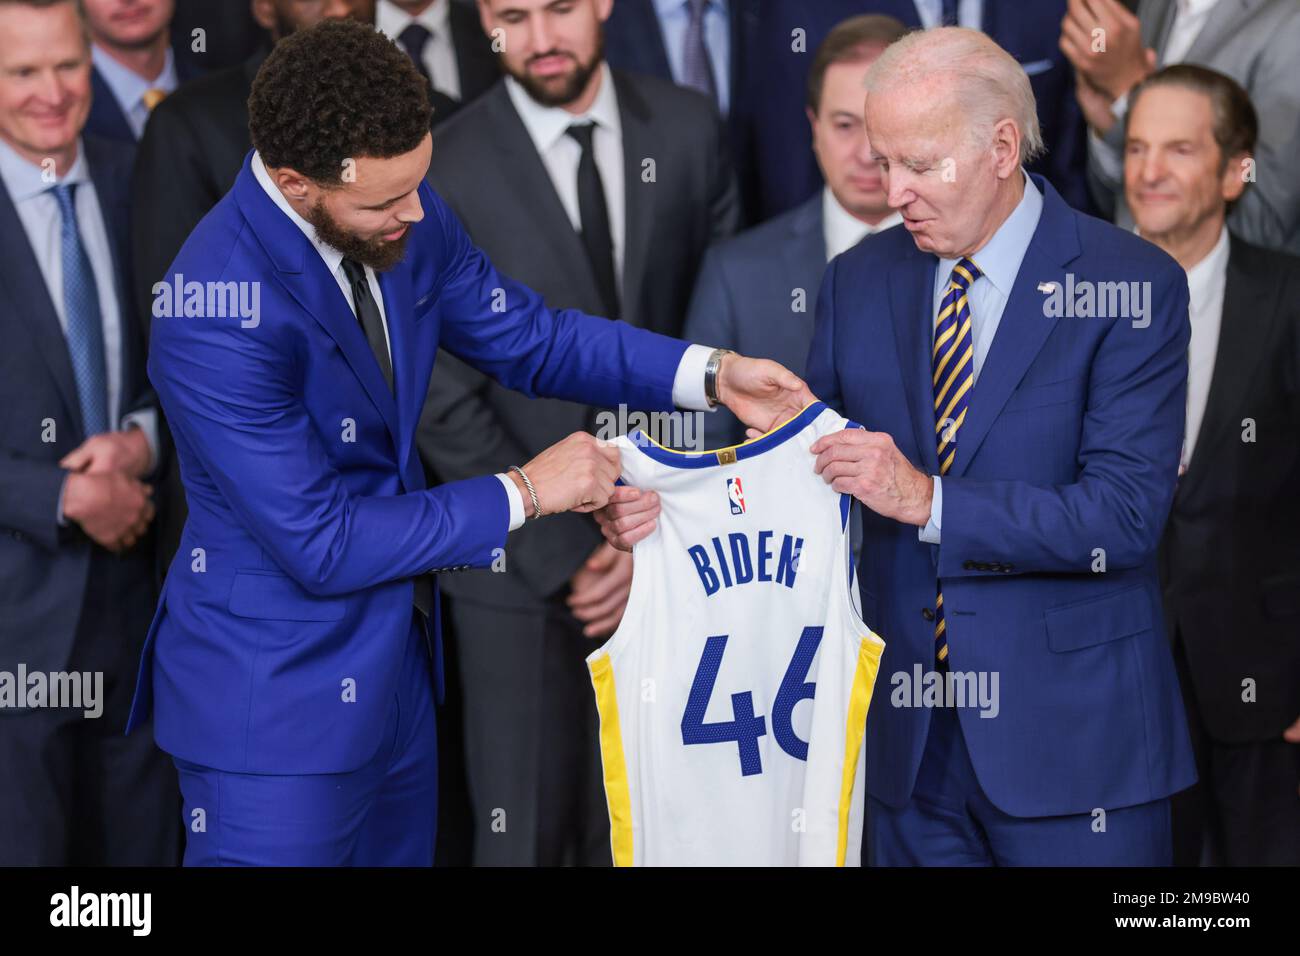 Stephen Curry donne un maillot avec “Biden” et “46” imprimés sur